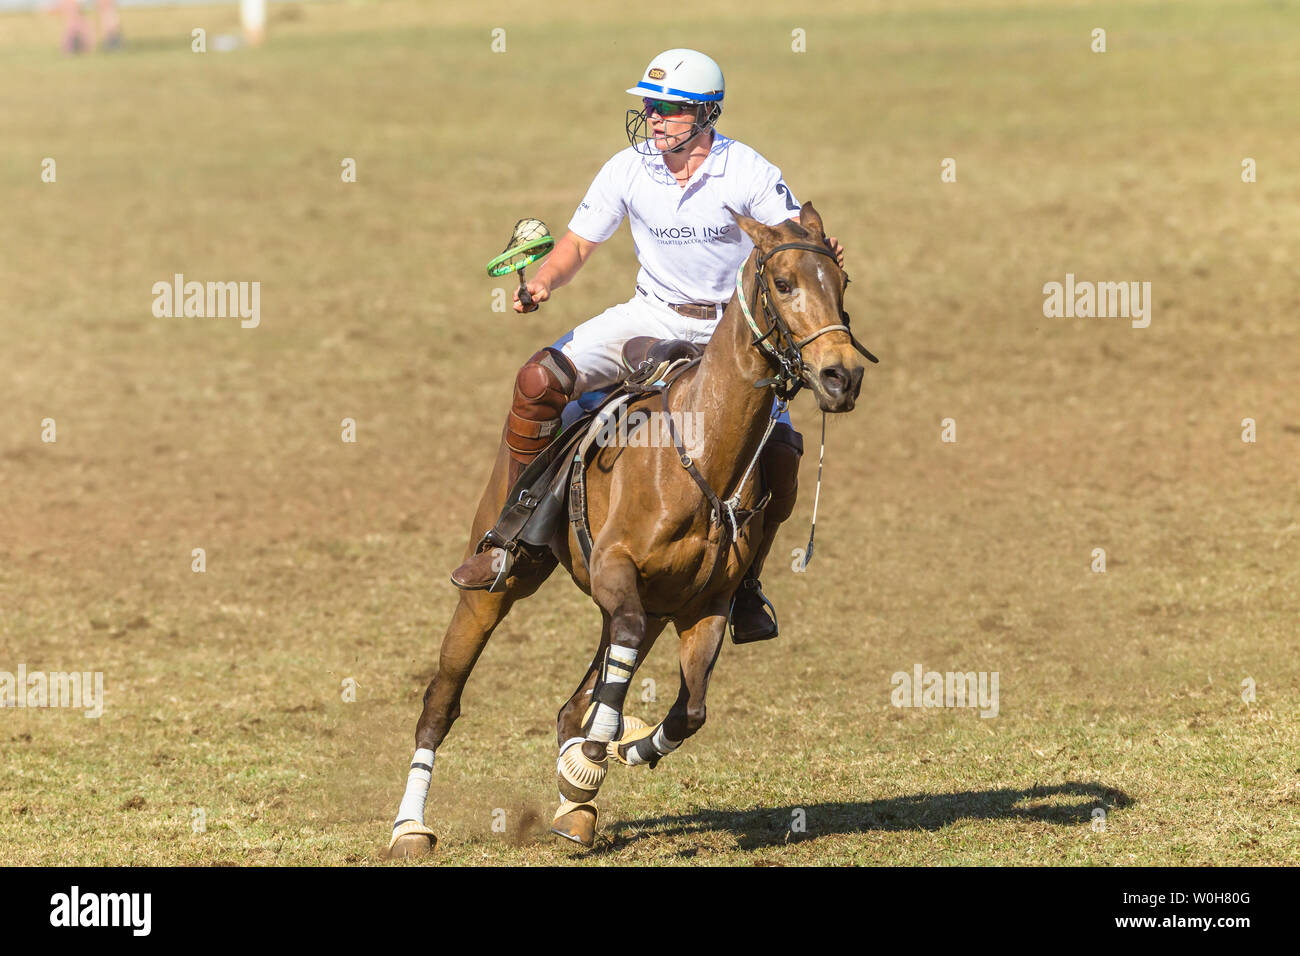 Polocrosse deporte ecuestre caballos pony rider jugadores closeup rápido juego de acción. Foto de stock